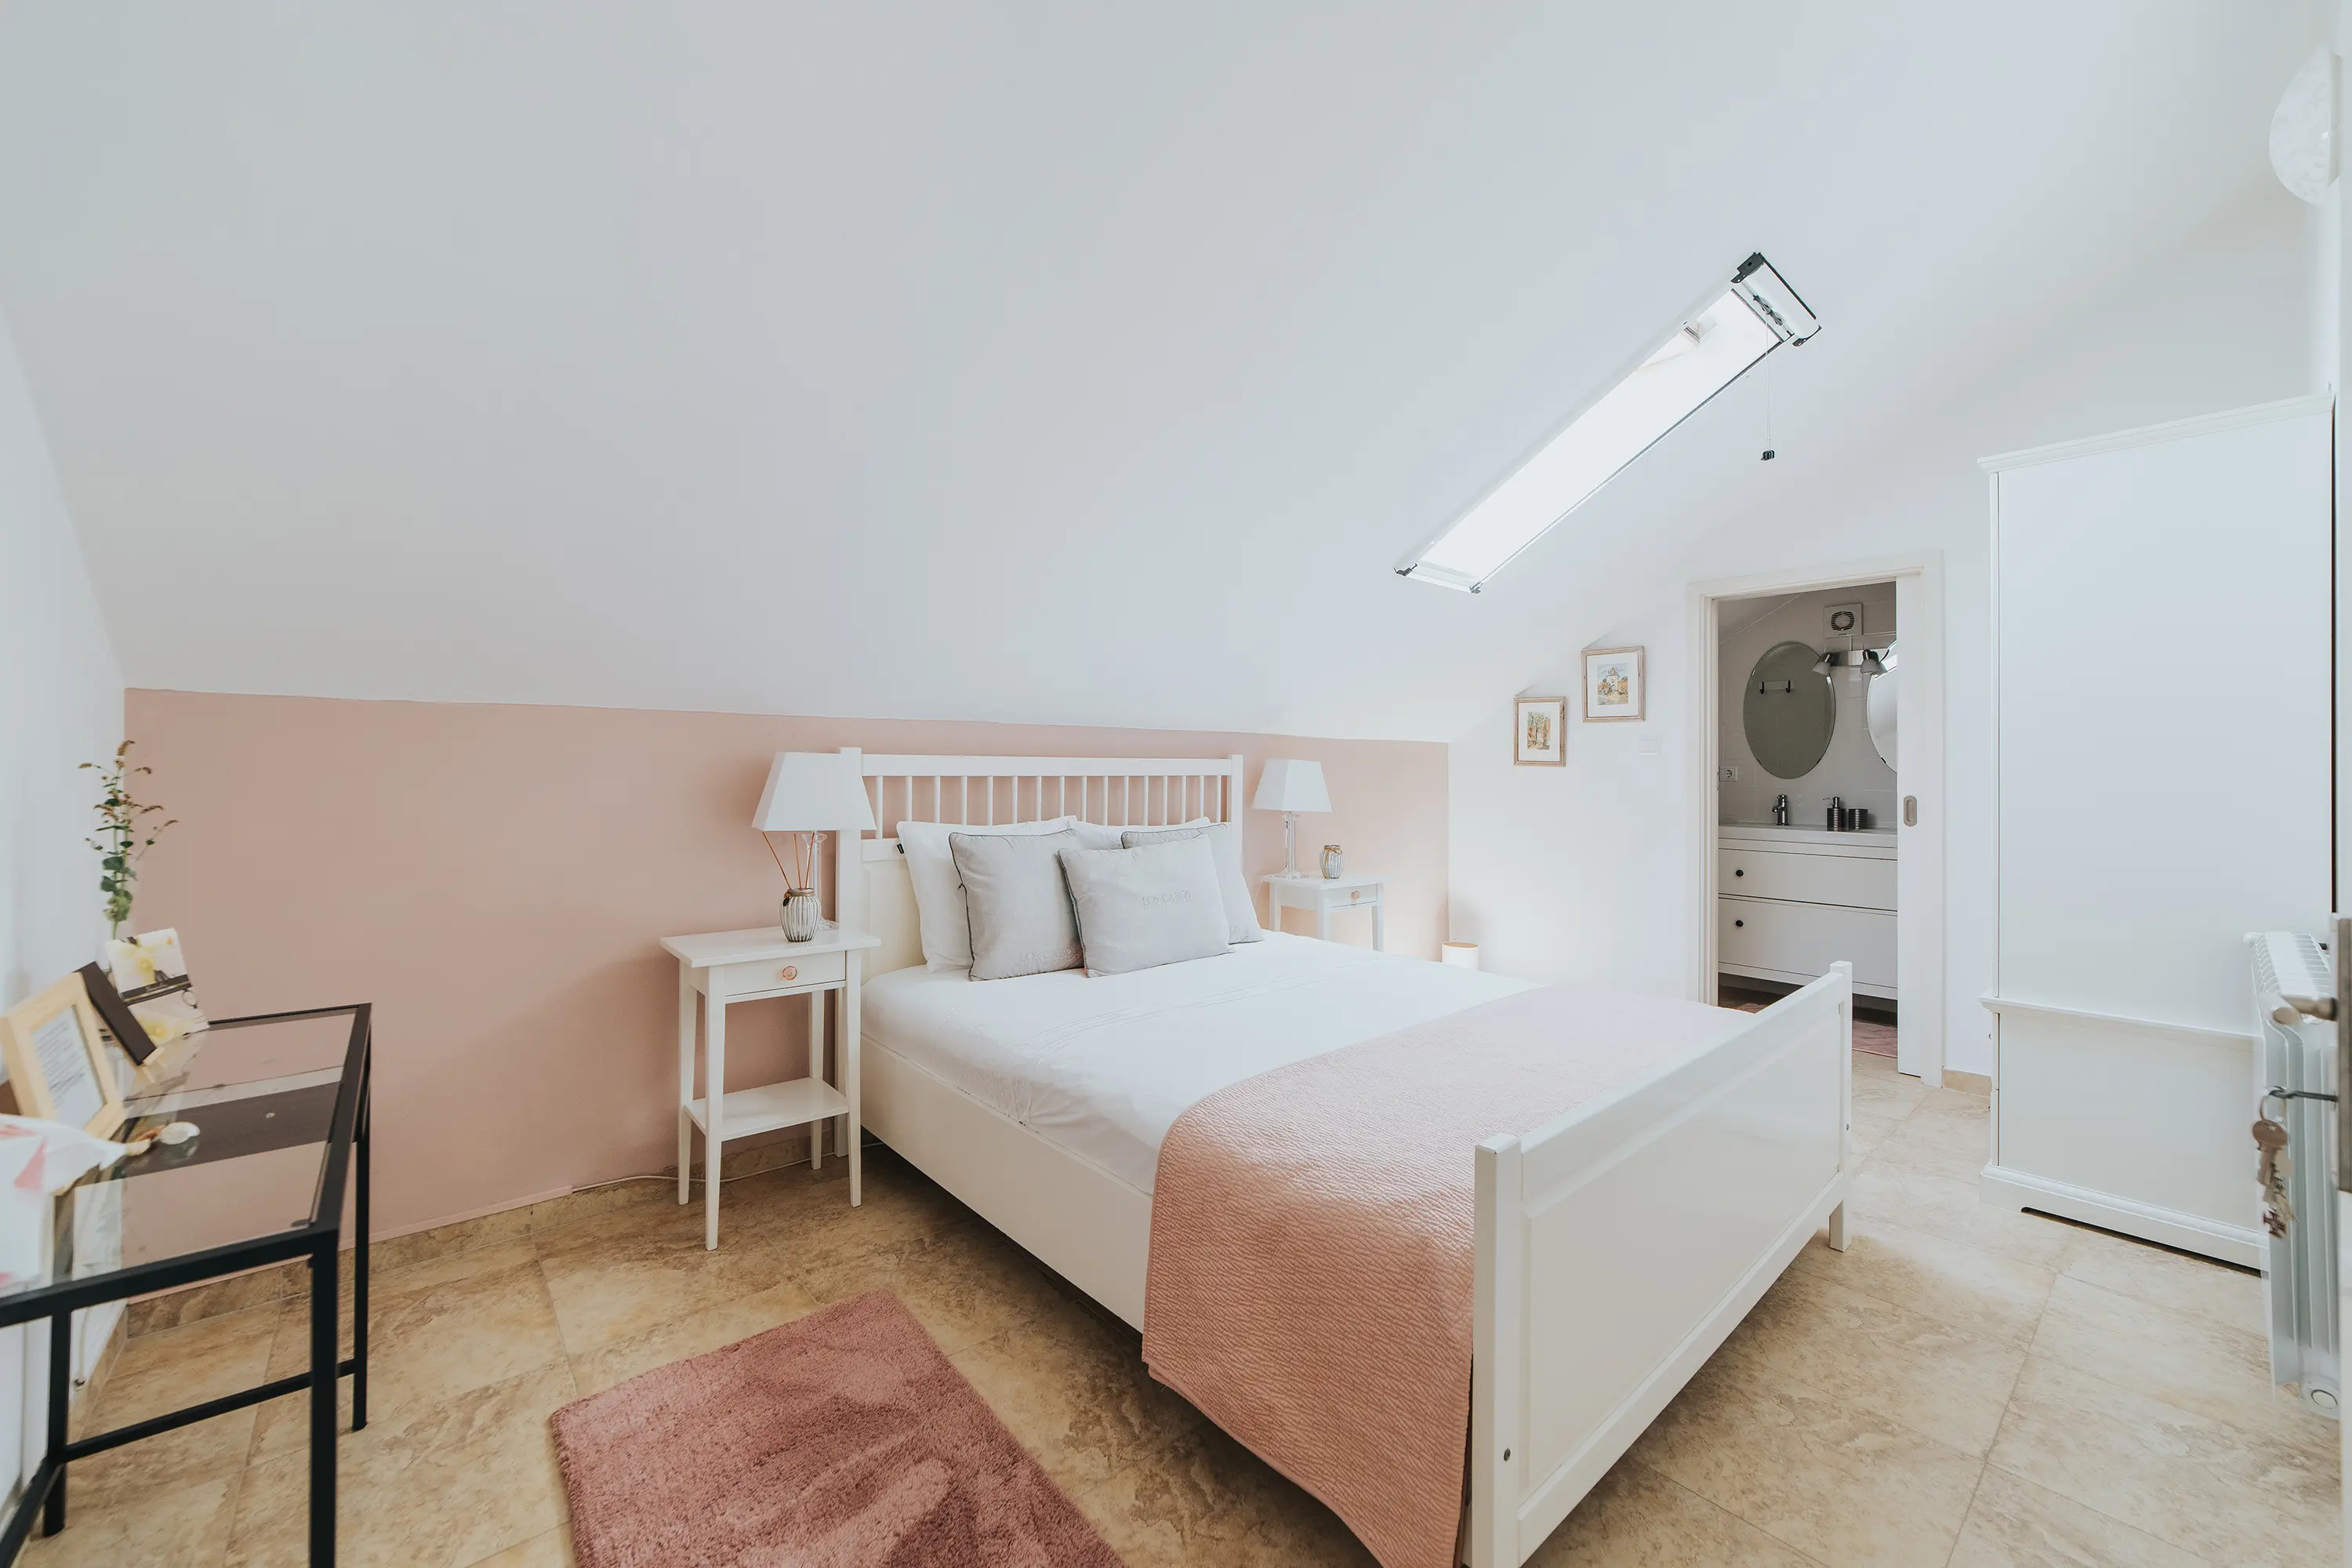 Fotografia de um quarto com bastante luz natural. Com uma mobília minimalista, é-lhe dado contraste com tons rosa. Um excelente exemplo de como um serviço profissional de fotografia de hotelaria irá impactar o seu espaço!